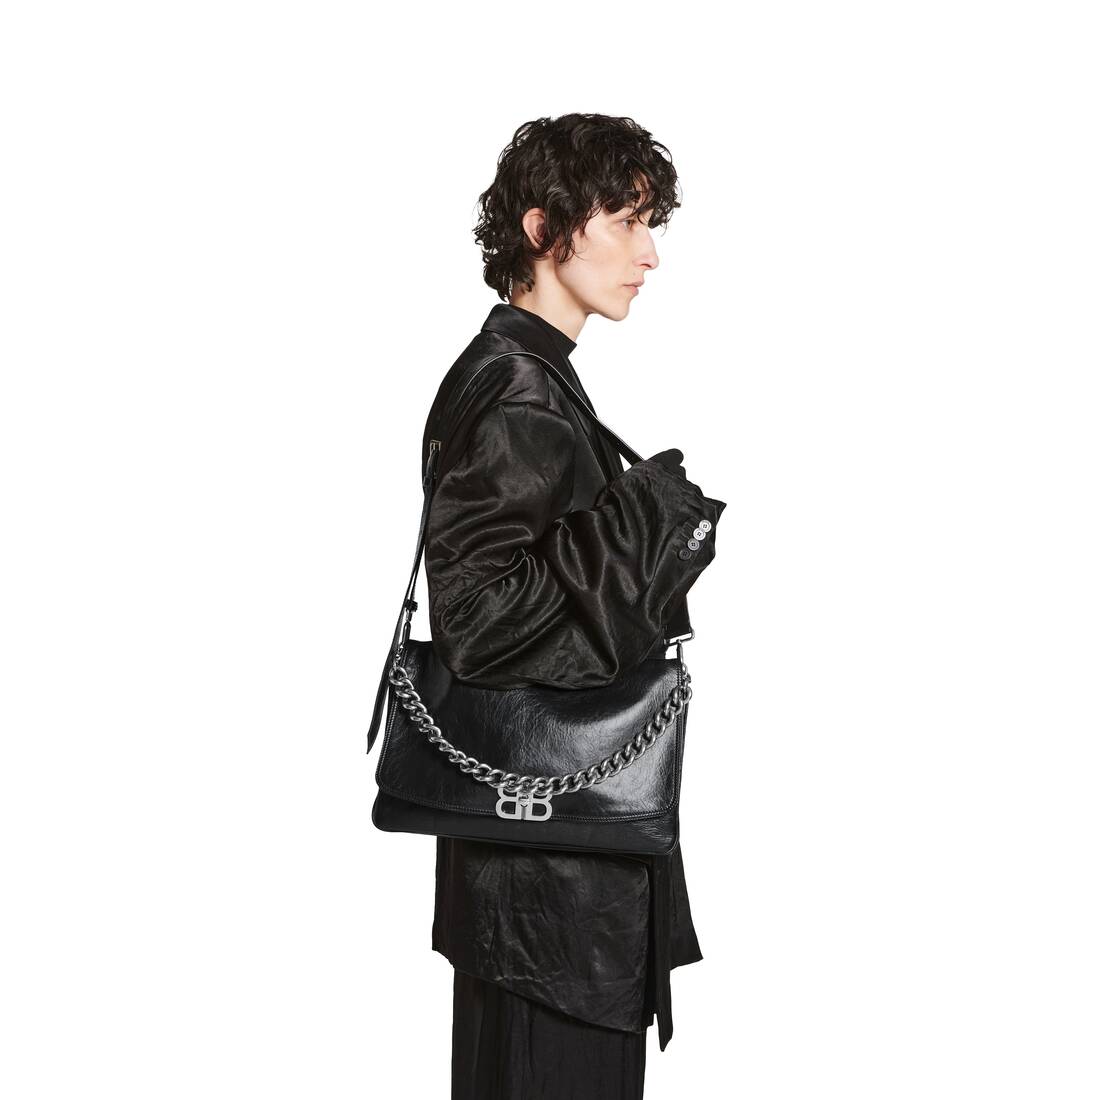 BALENCIAGA: Flap bag in Peach leather - Black